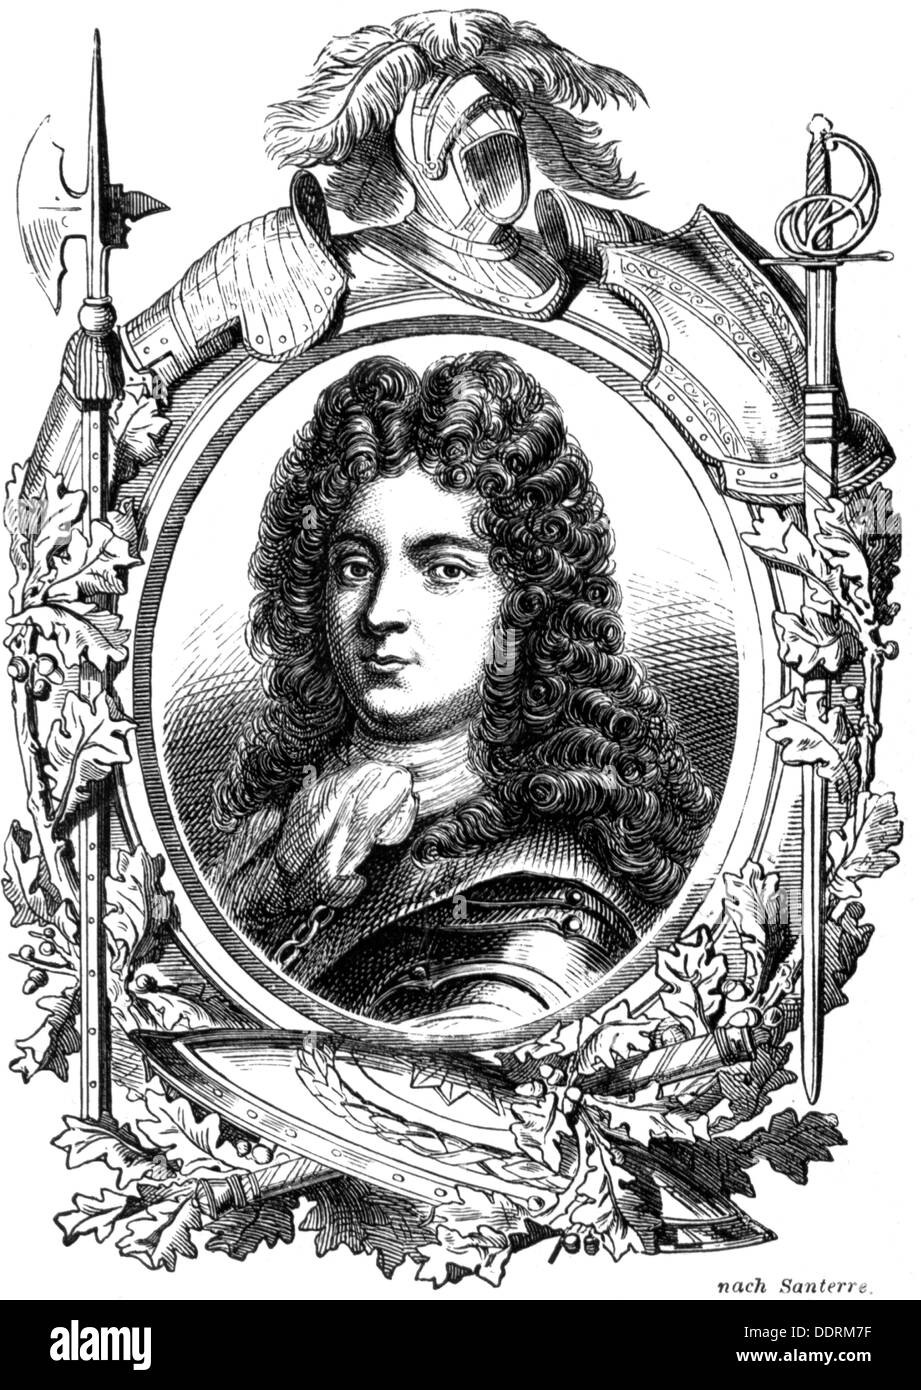 Philipp II., 4.8.1674 - 2.12.1723, Herzog von Orleans, Regent von Frankreich 1715 - 1723, Porträt, Holzgravur nach Santerre, 19. Jahrhundert, Stockfoto